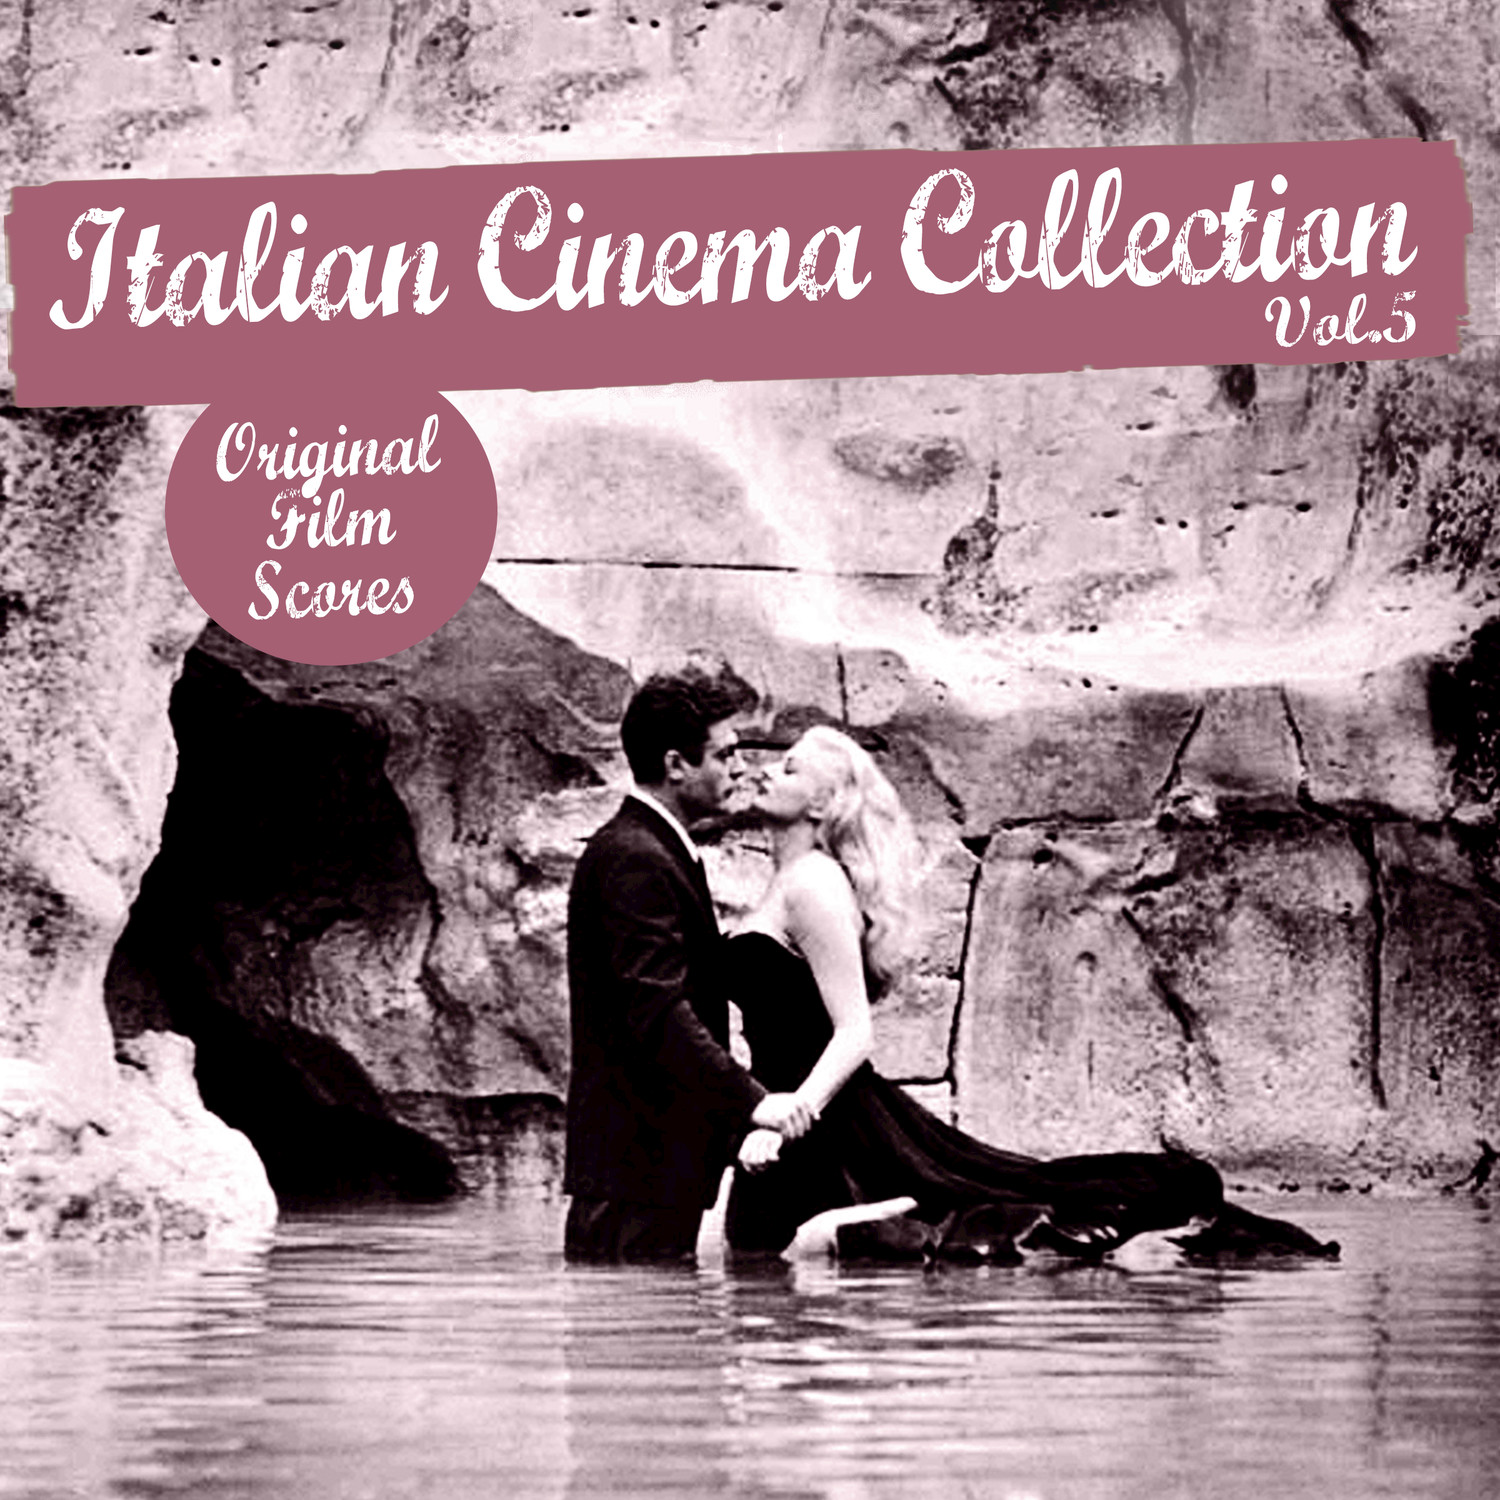 Italian Cinema Collection, Vol. 5 (Original Film Scores)